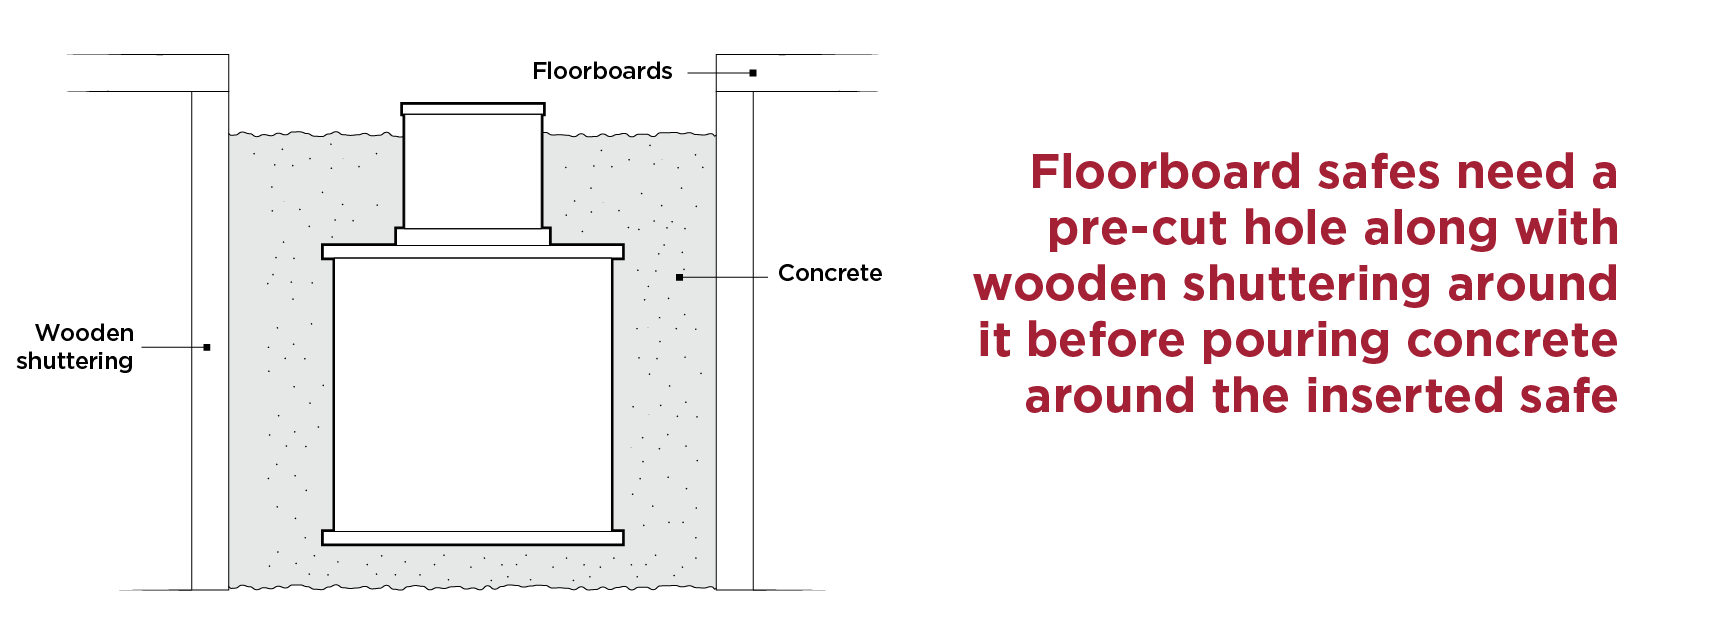 Floor Safes need Preparation